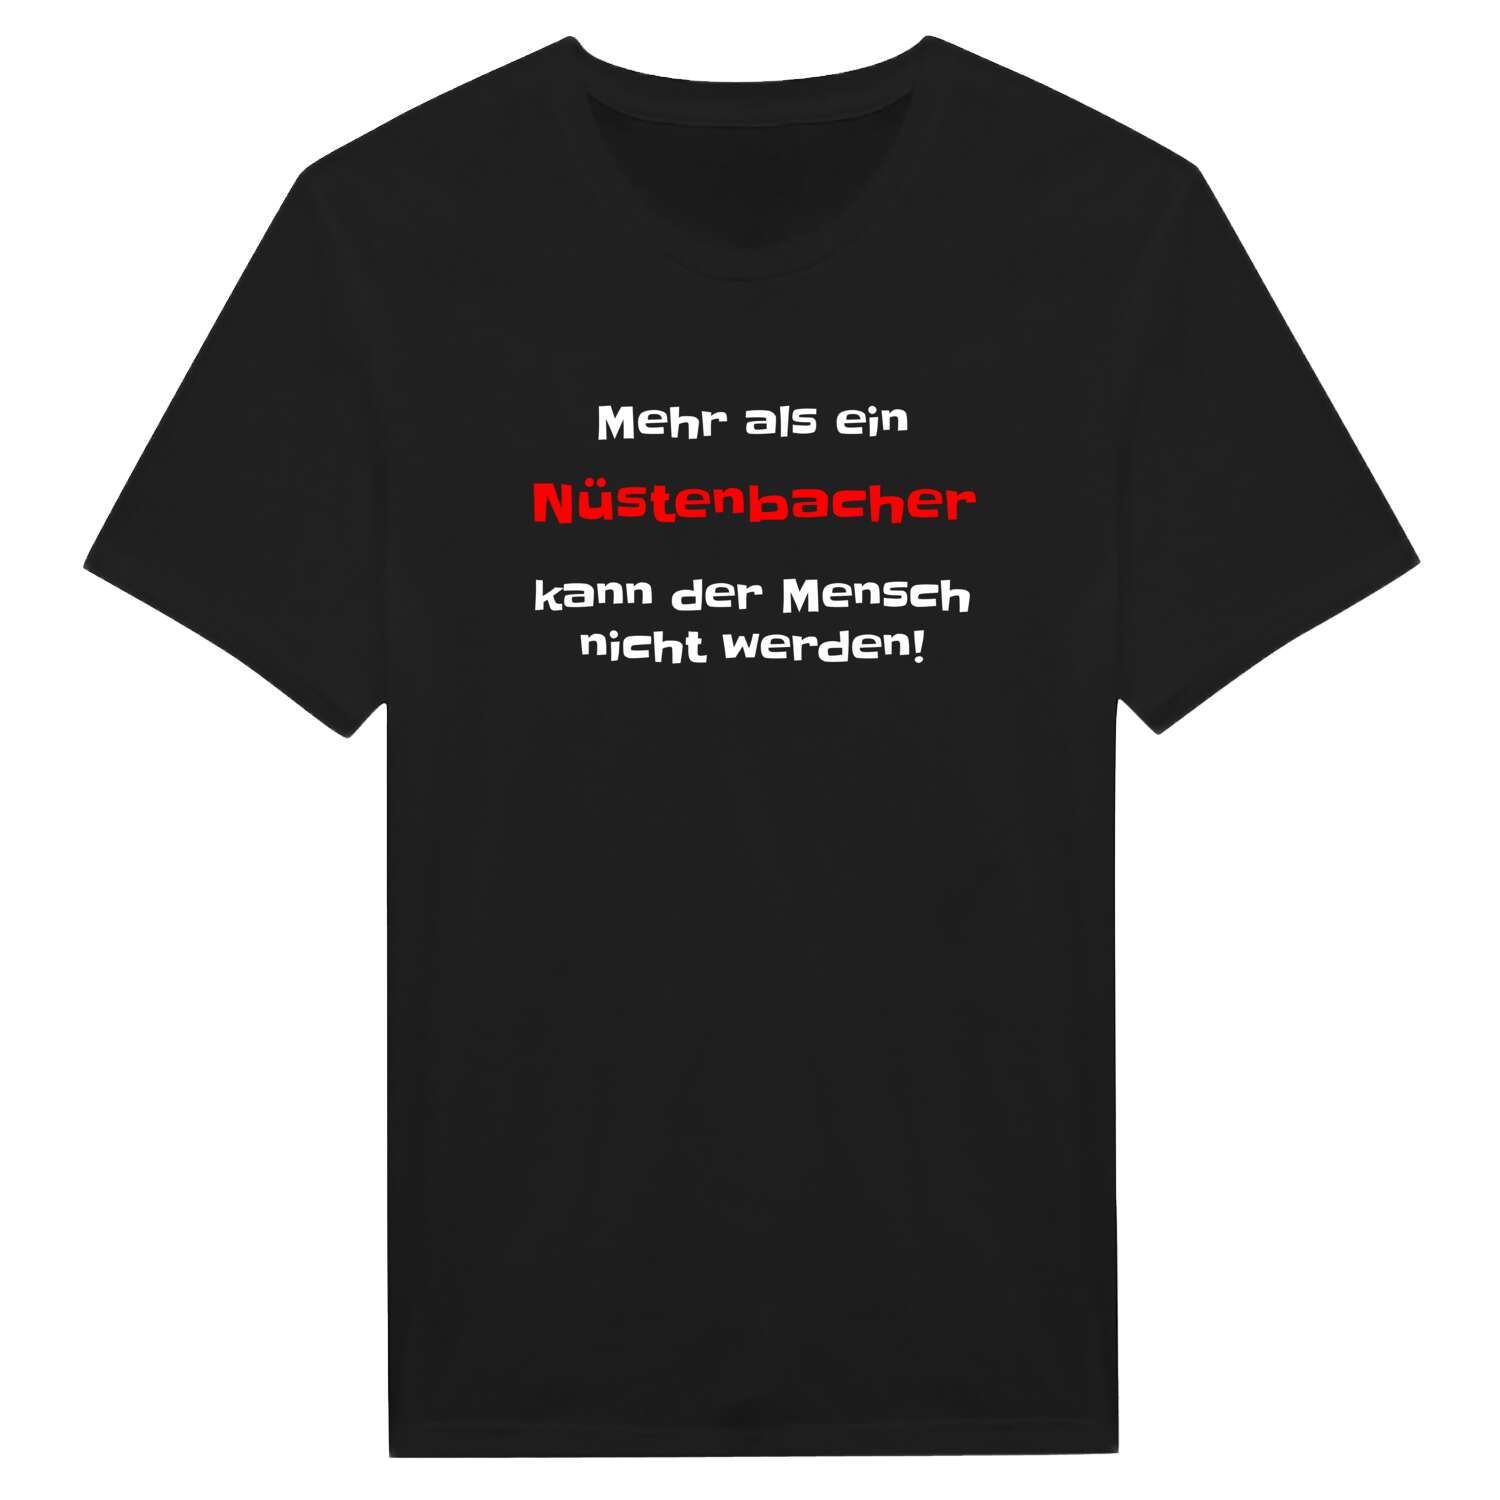 Nüstenbach T-Shirt »Mehr als ein«